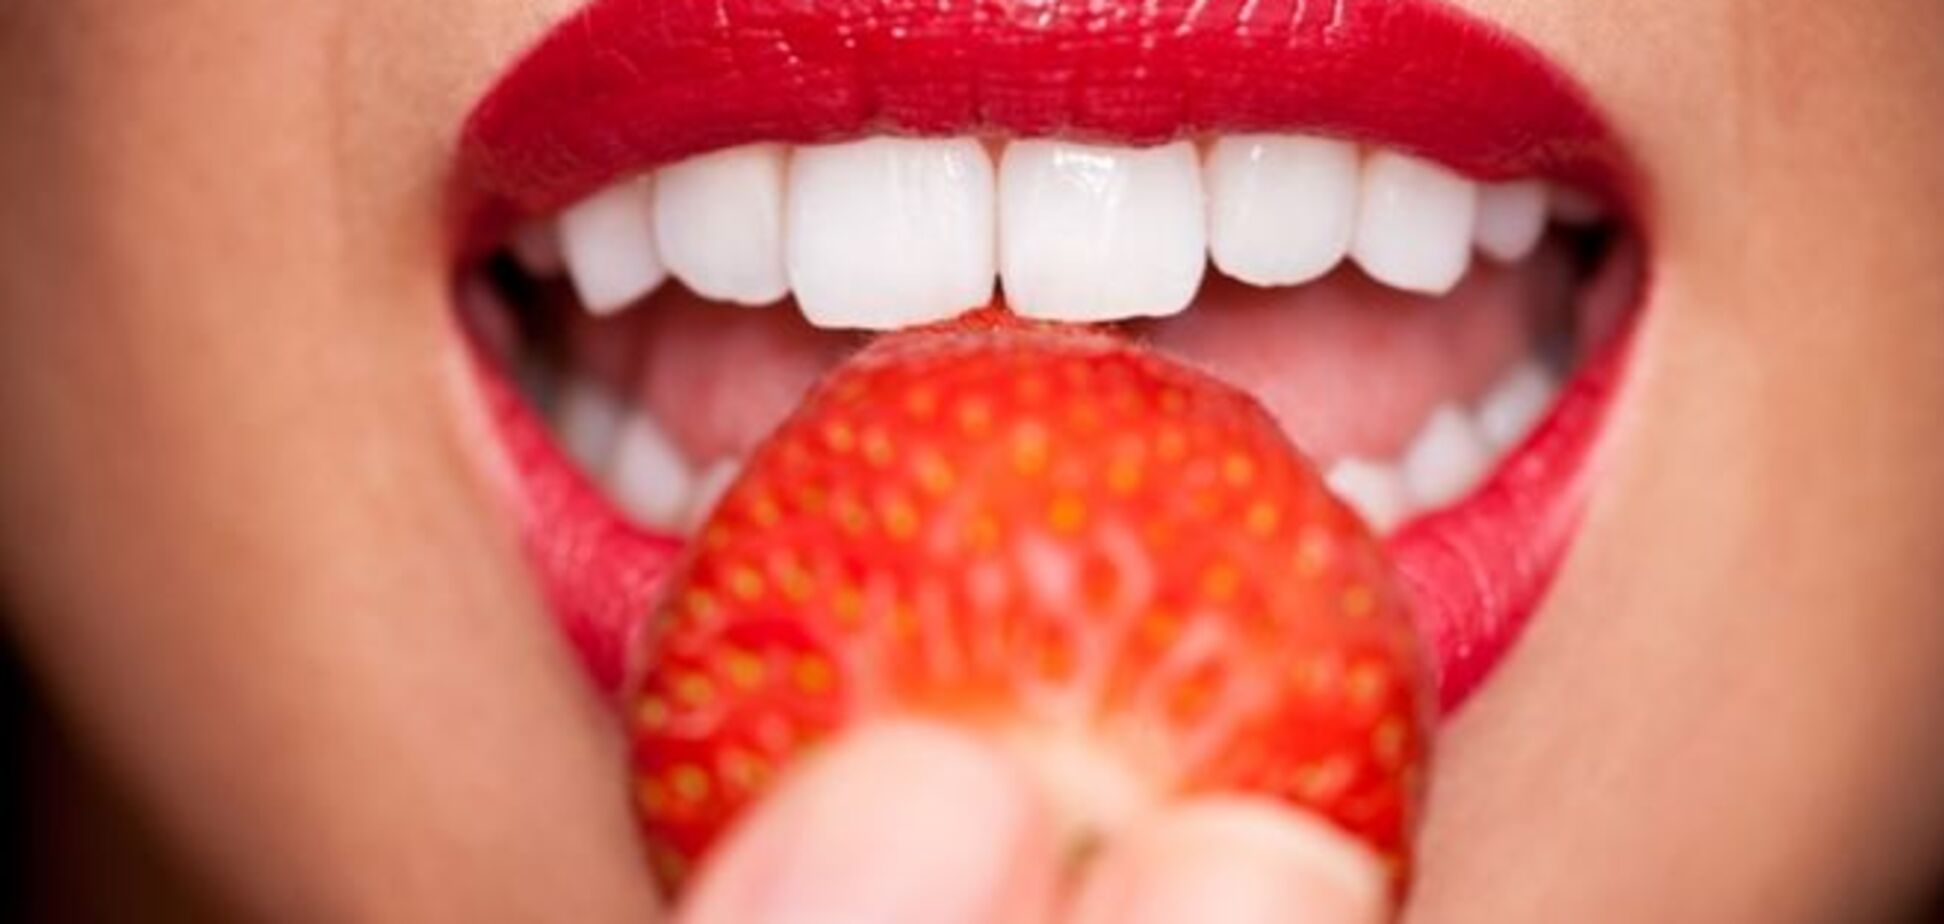 Топ-6 продуктов, которые приводят к желтизне зубов